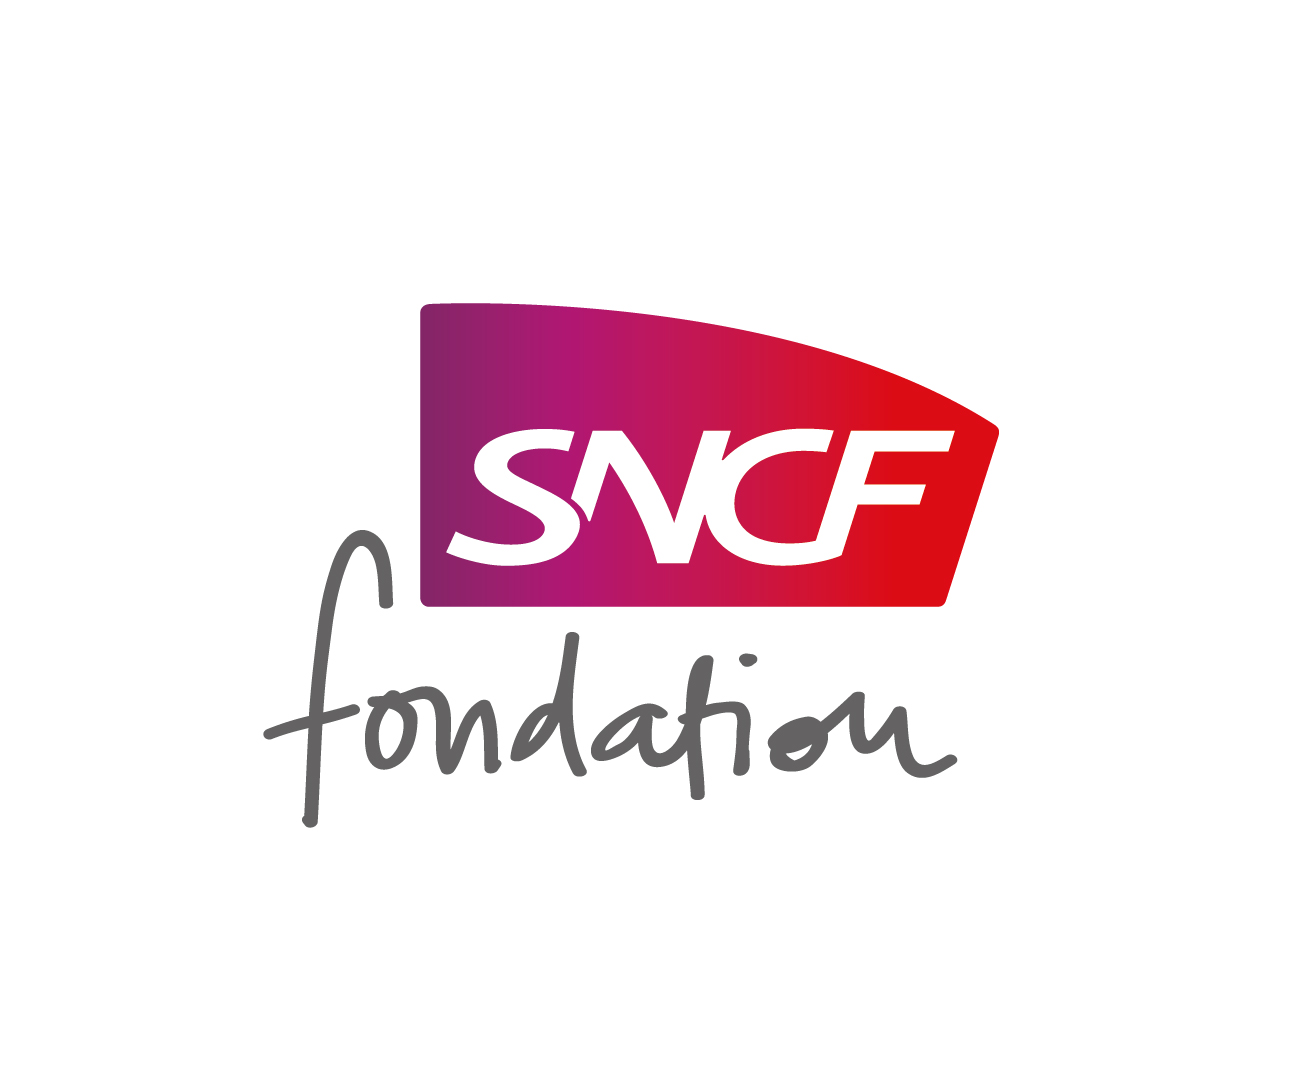 La Fondation SNCF | La Fonda